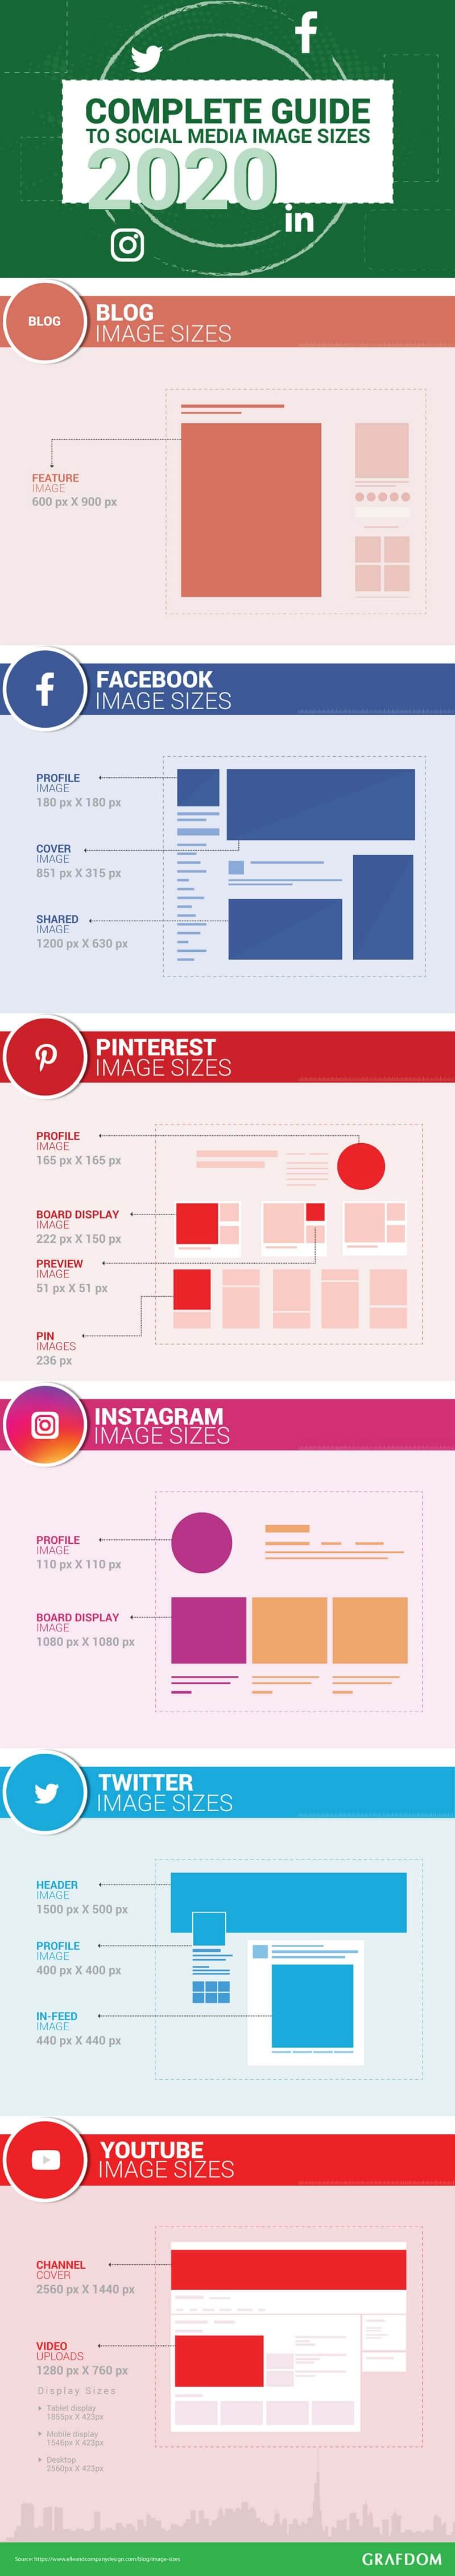 social media image size